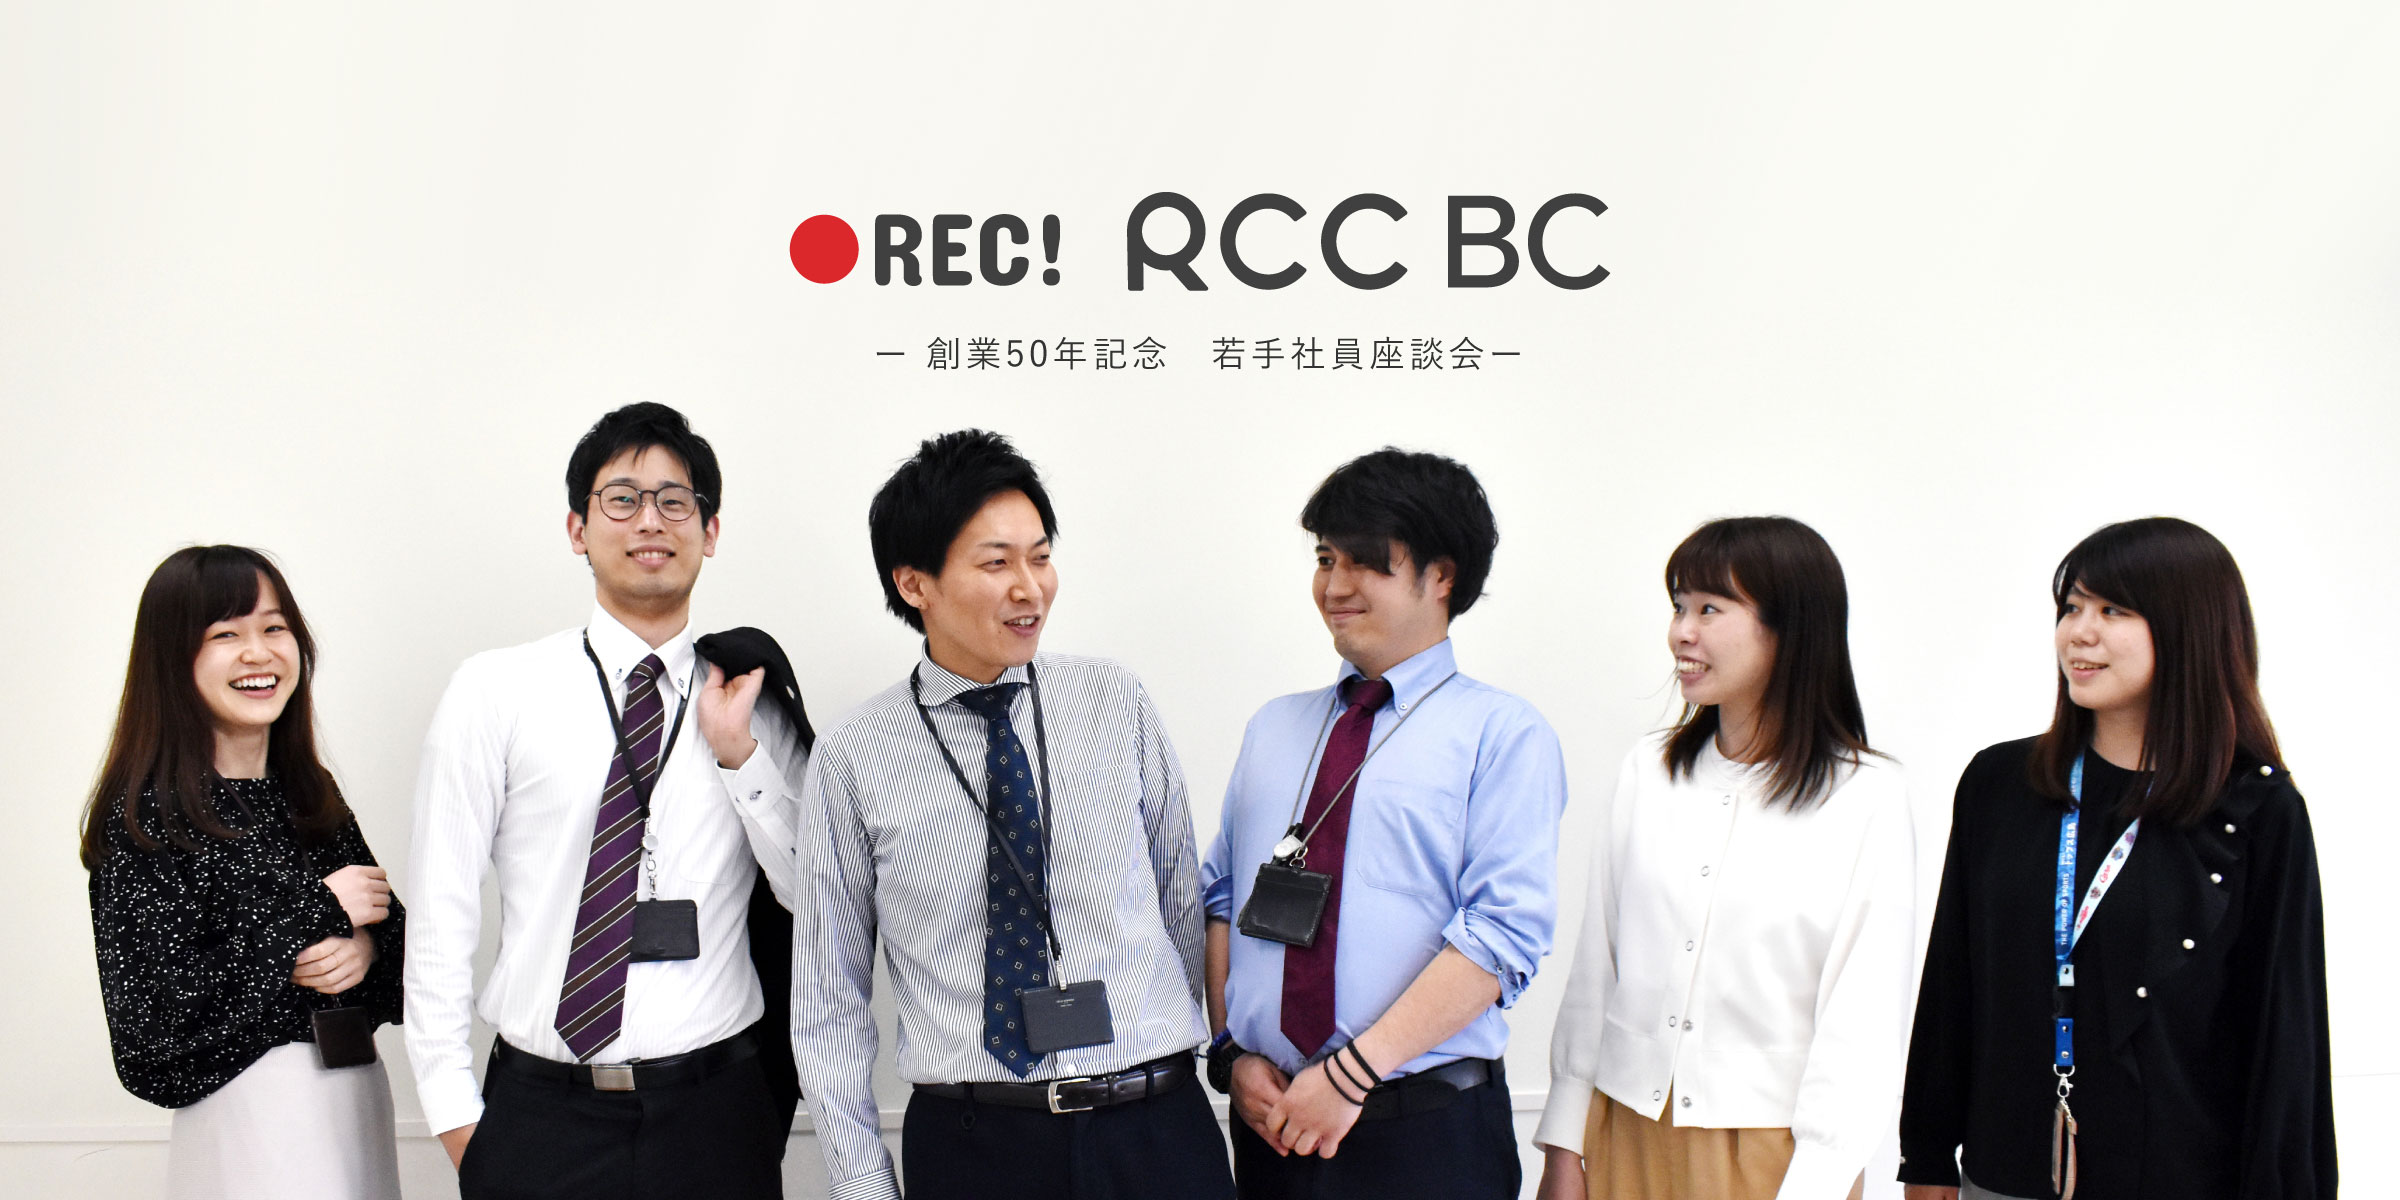 Rcc文化センター創業50年記念 若手社員座談会 Rec Rccbc